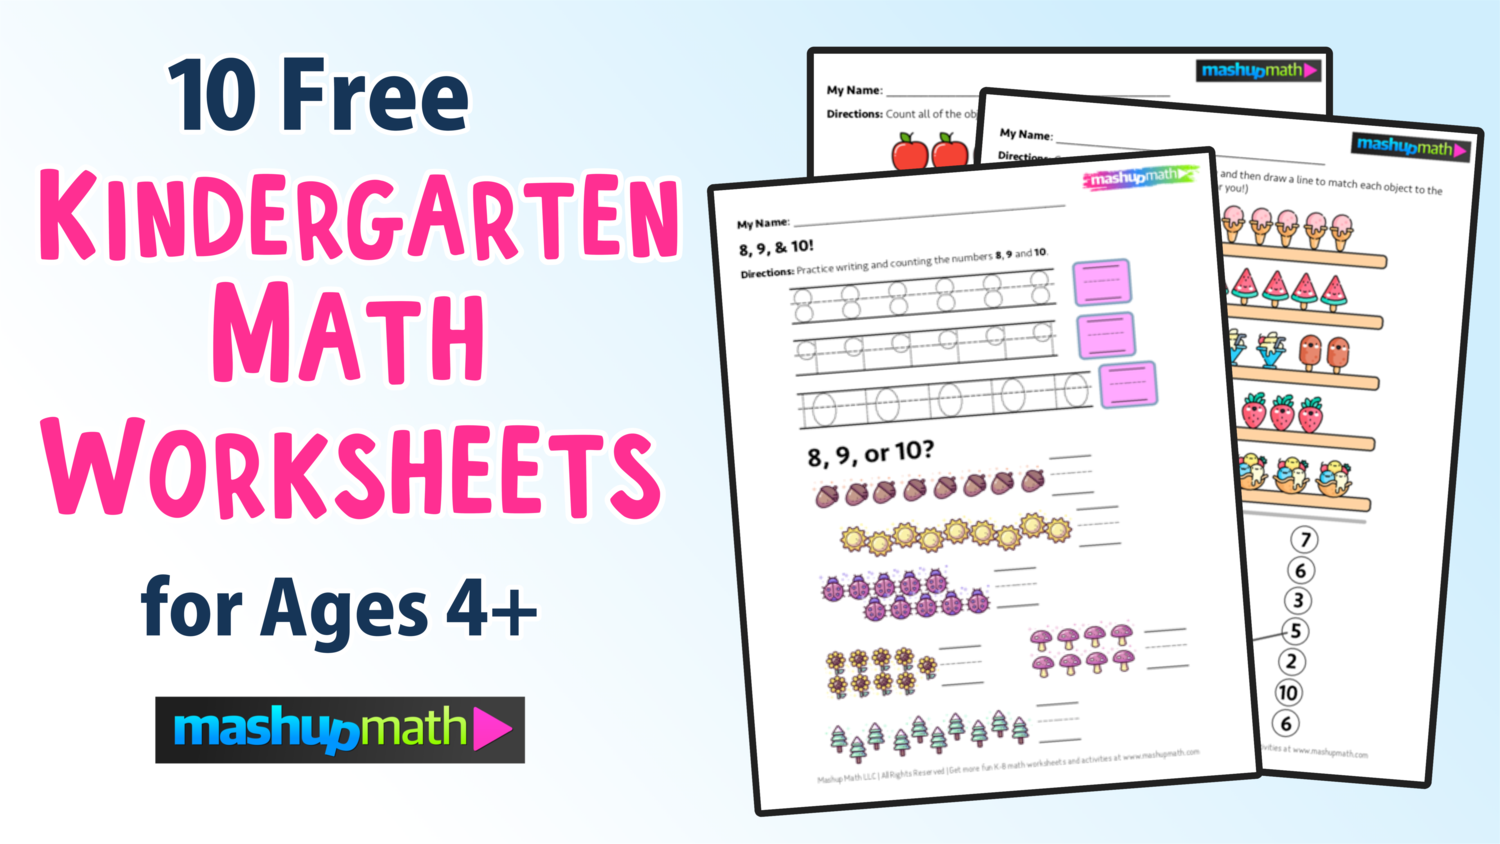 10 free kindergarten math worksheets pdf downloads mashup math